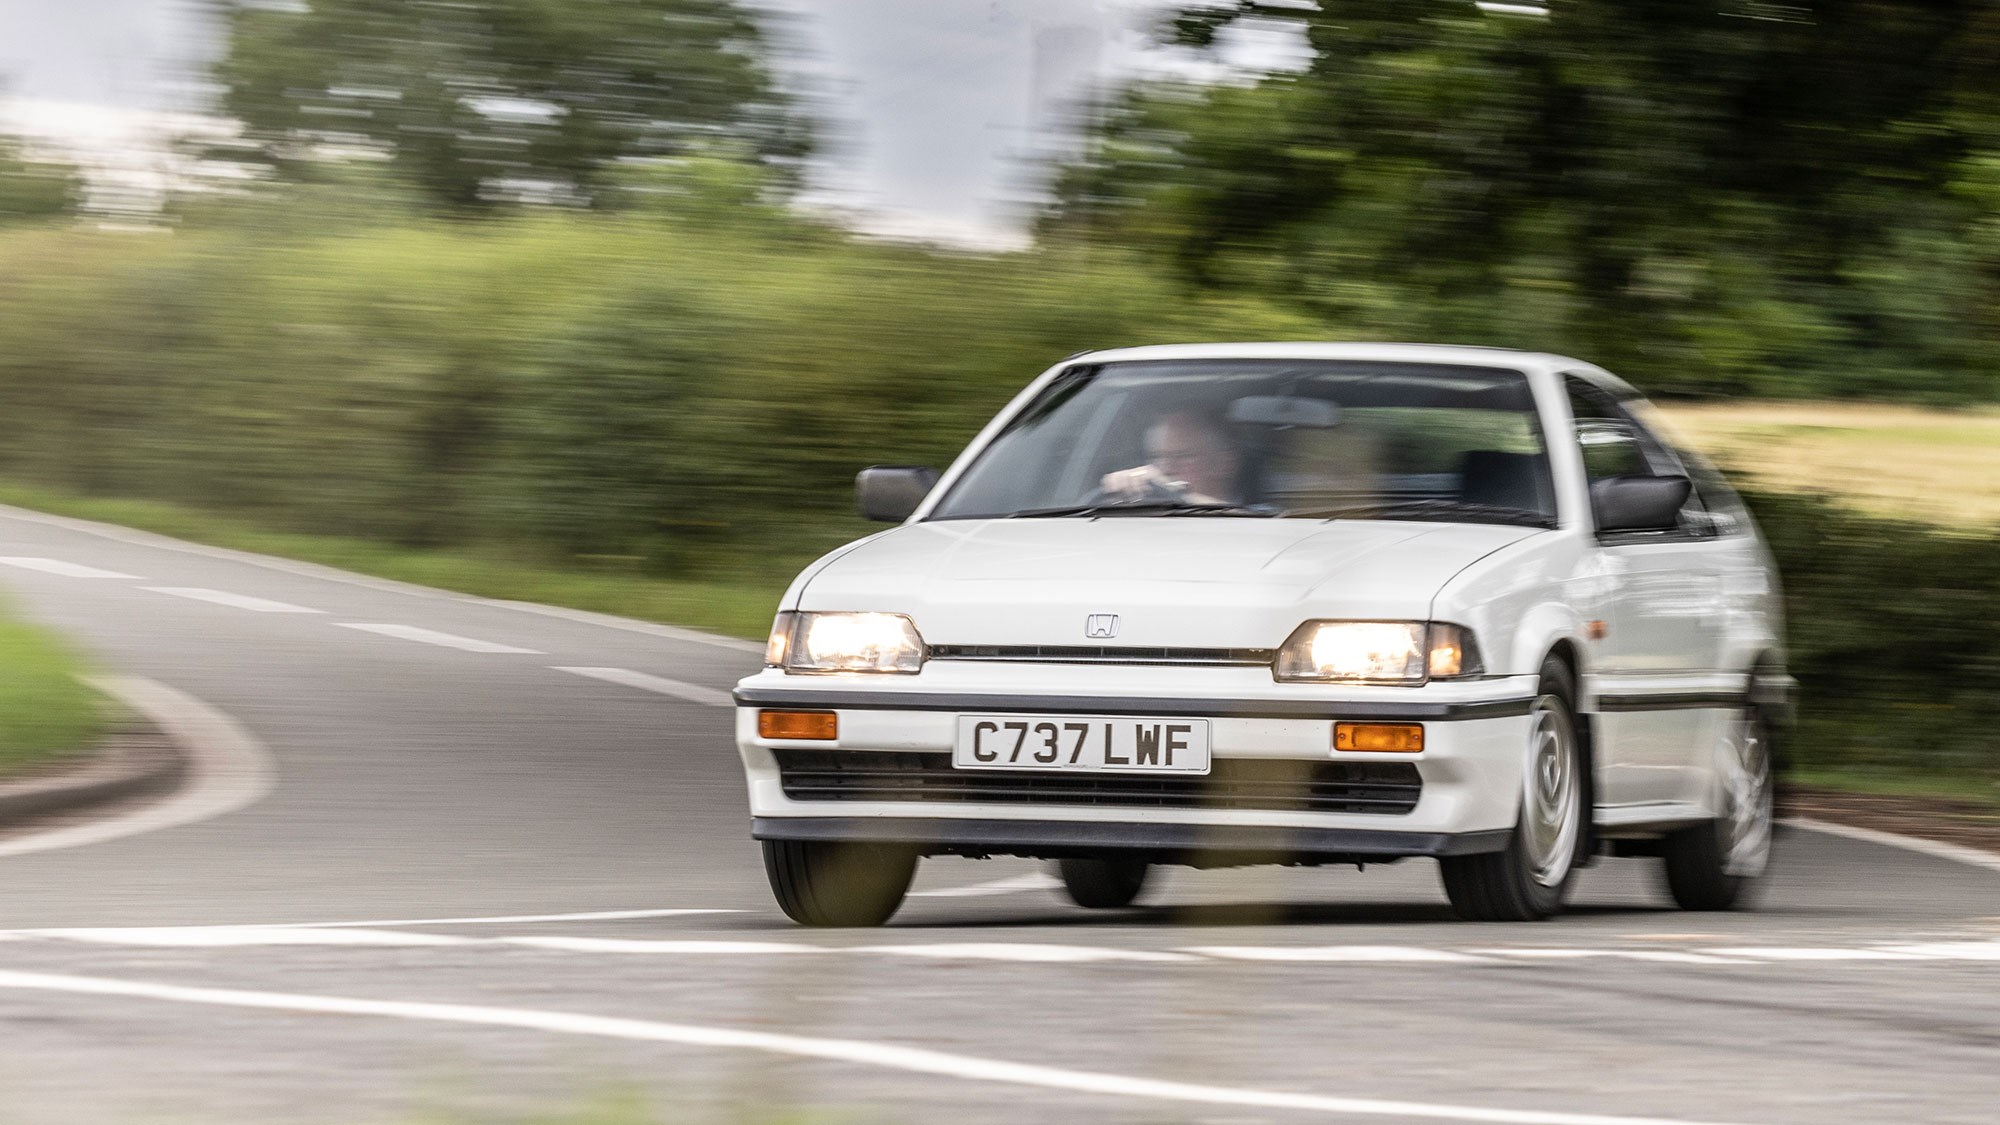 Driving the classics: Honda CRX review (1985)